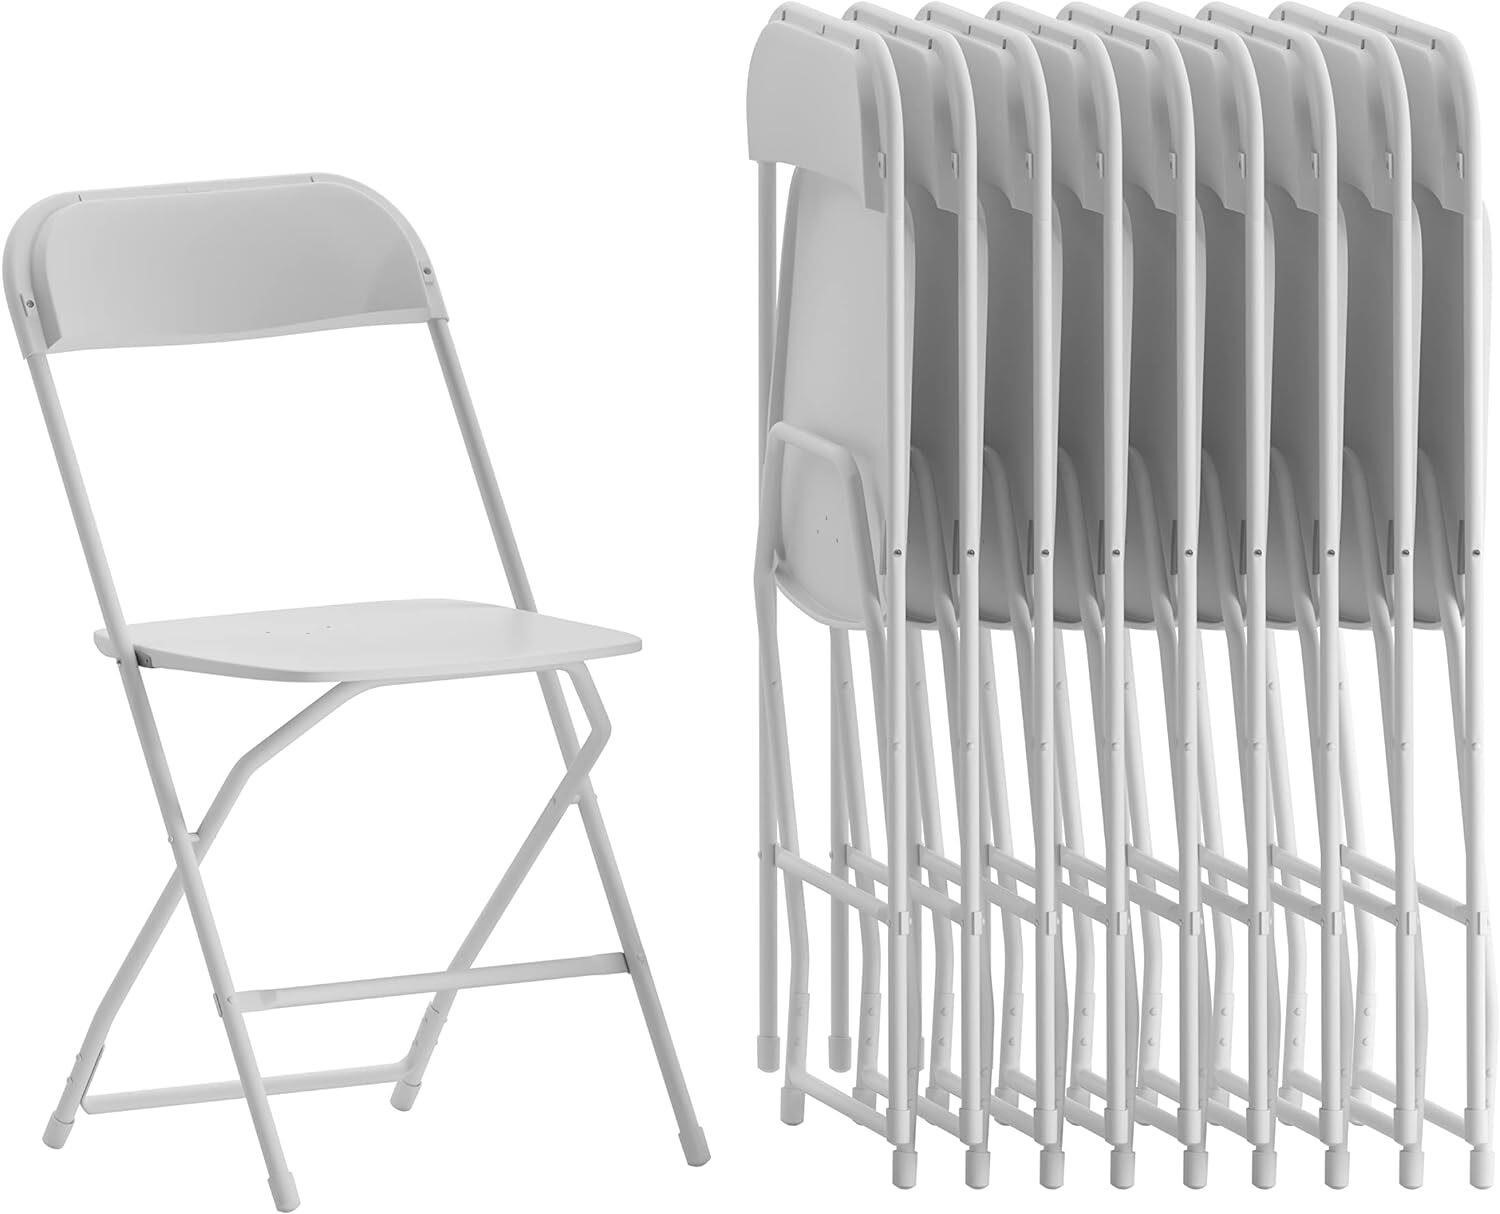 6pk Folding Chair  White